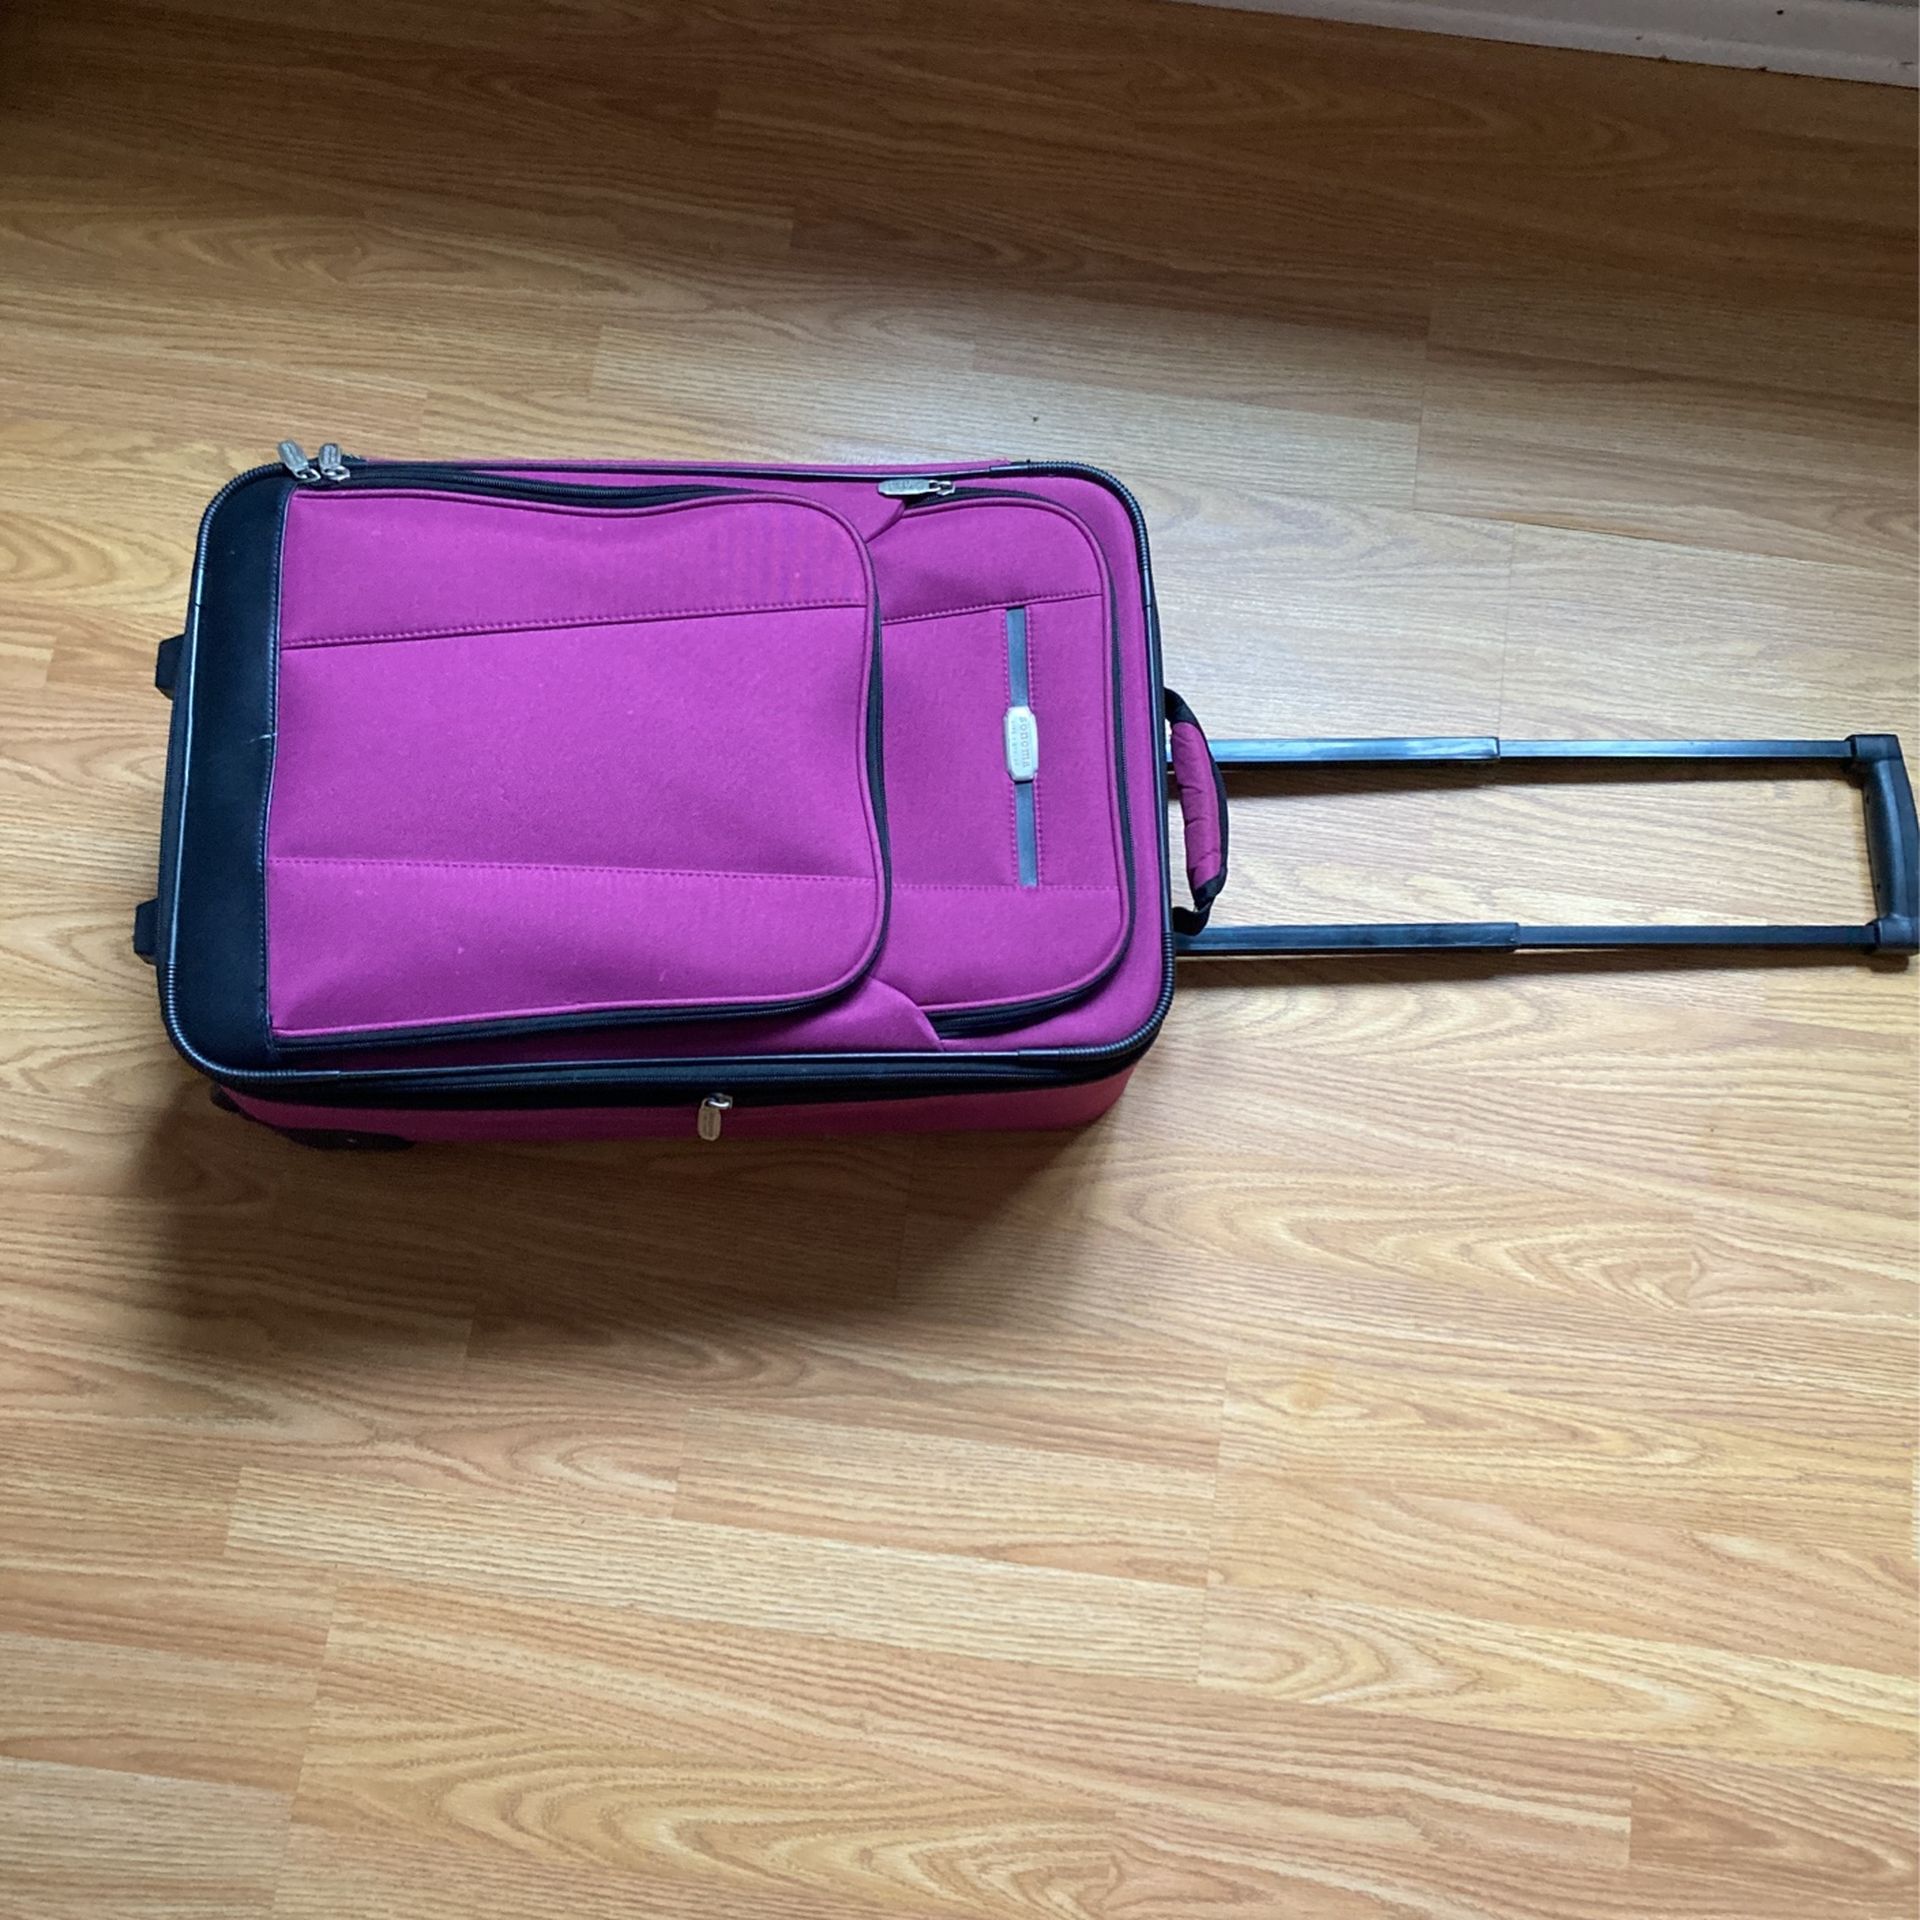 Purple Suitcase